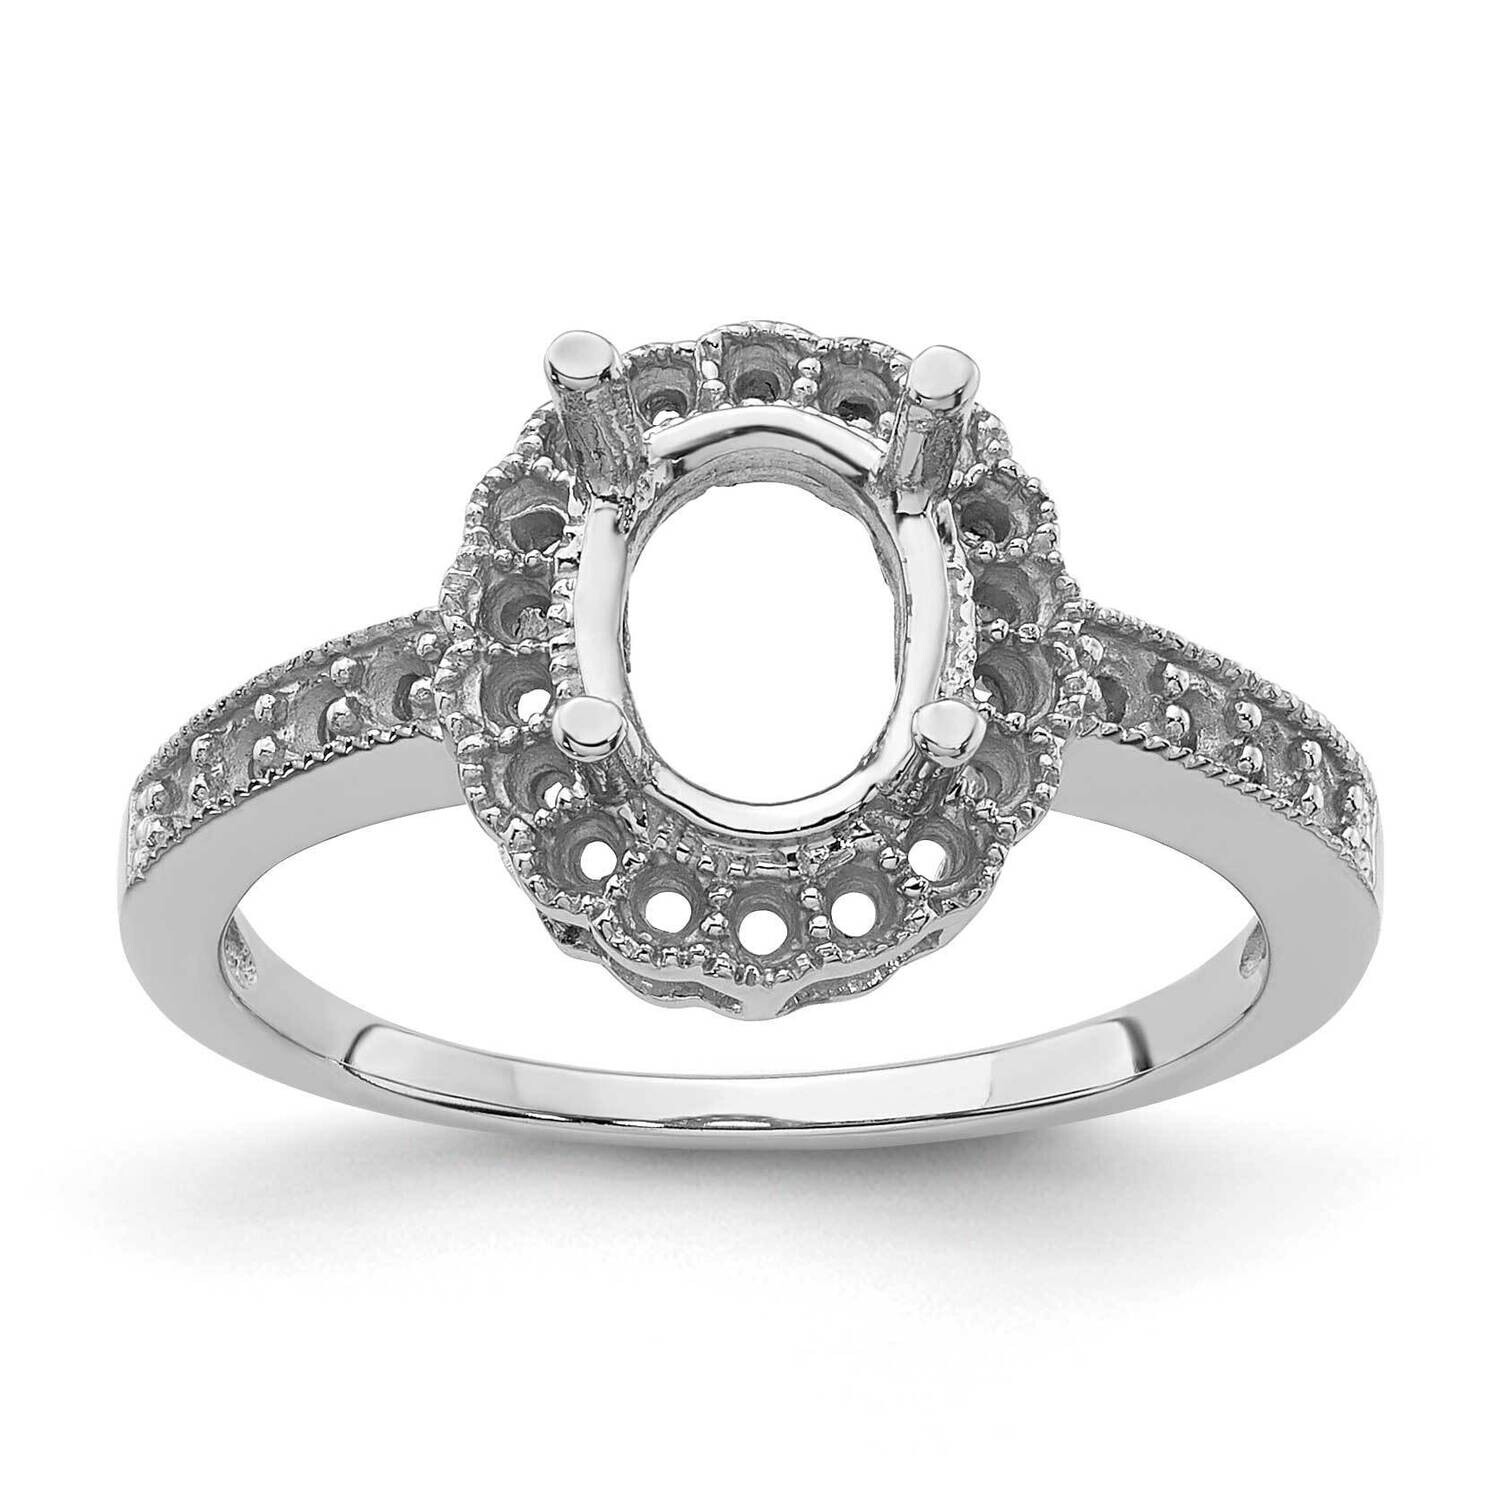 Diamond & Gemstone Ring Mounting 14k White Gold Y4420